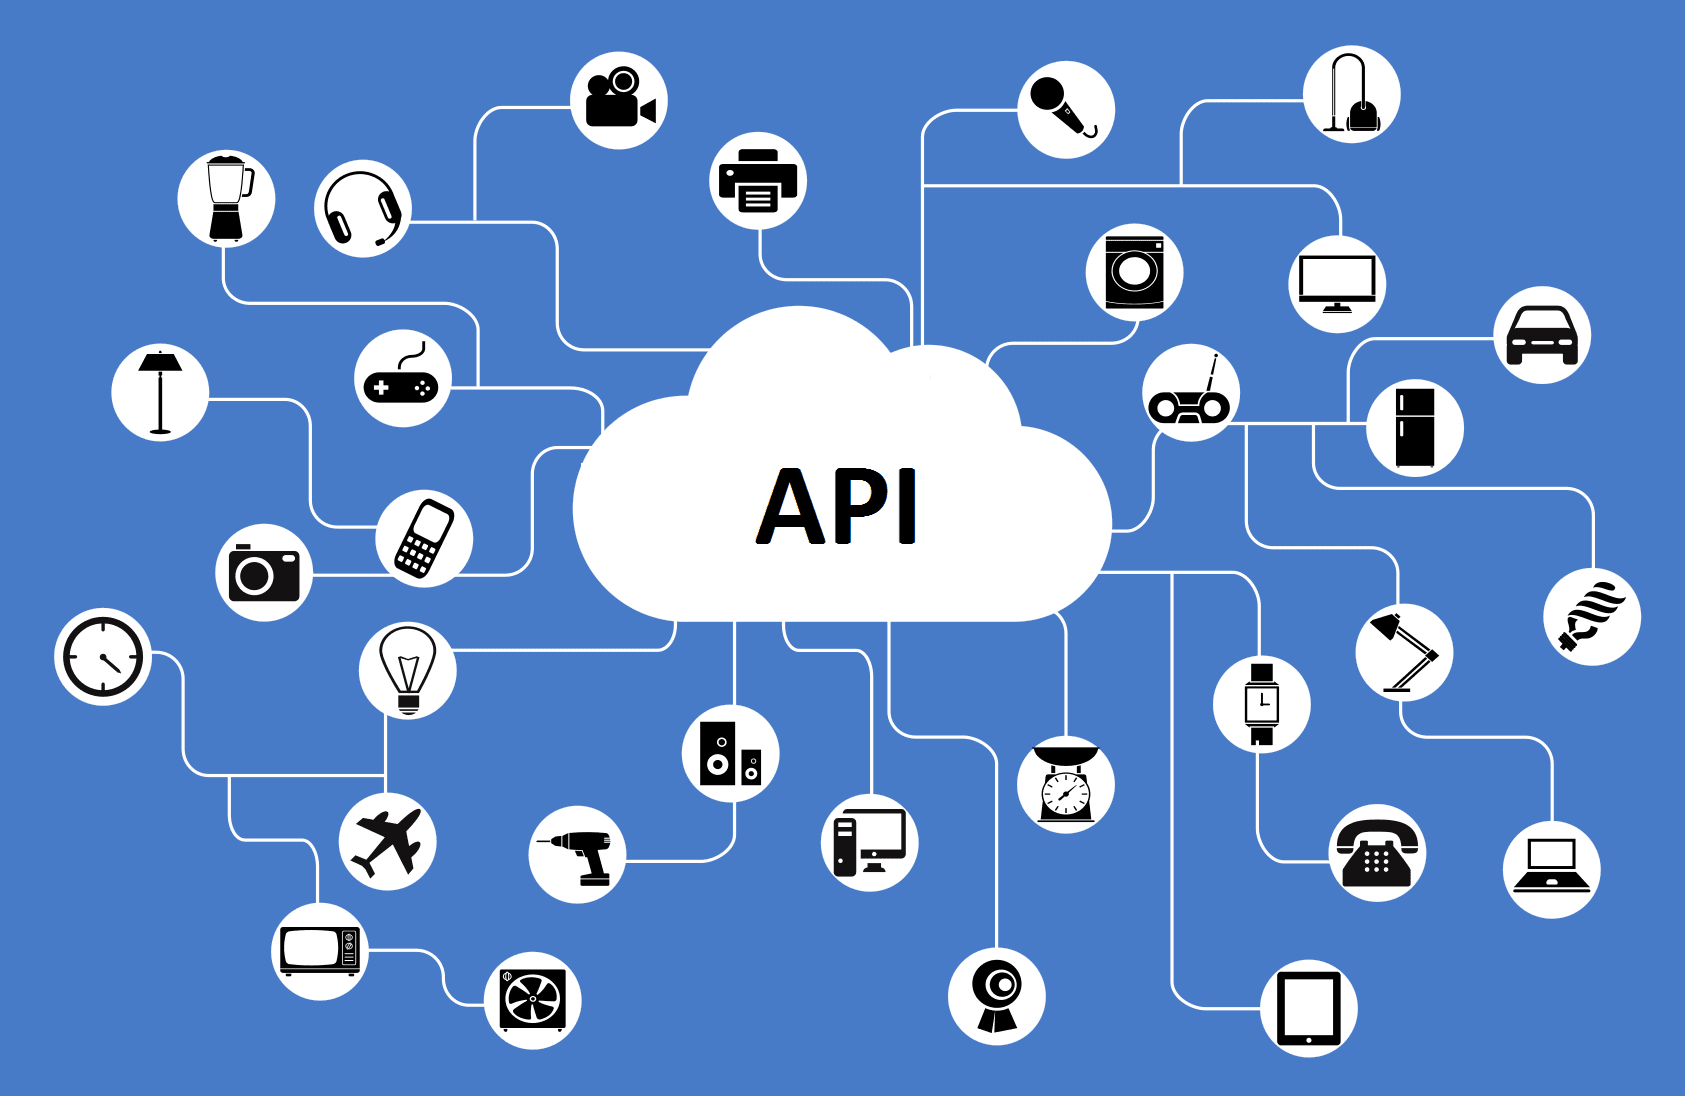 Test Cases for API